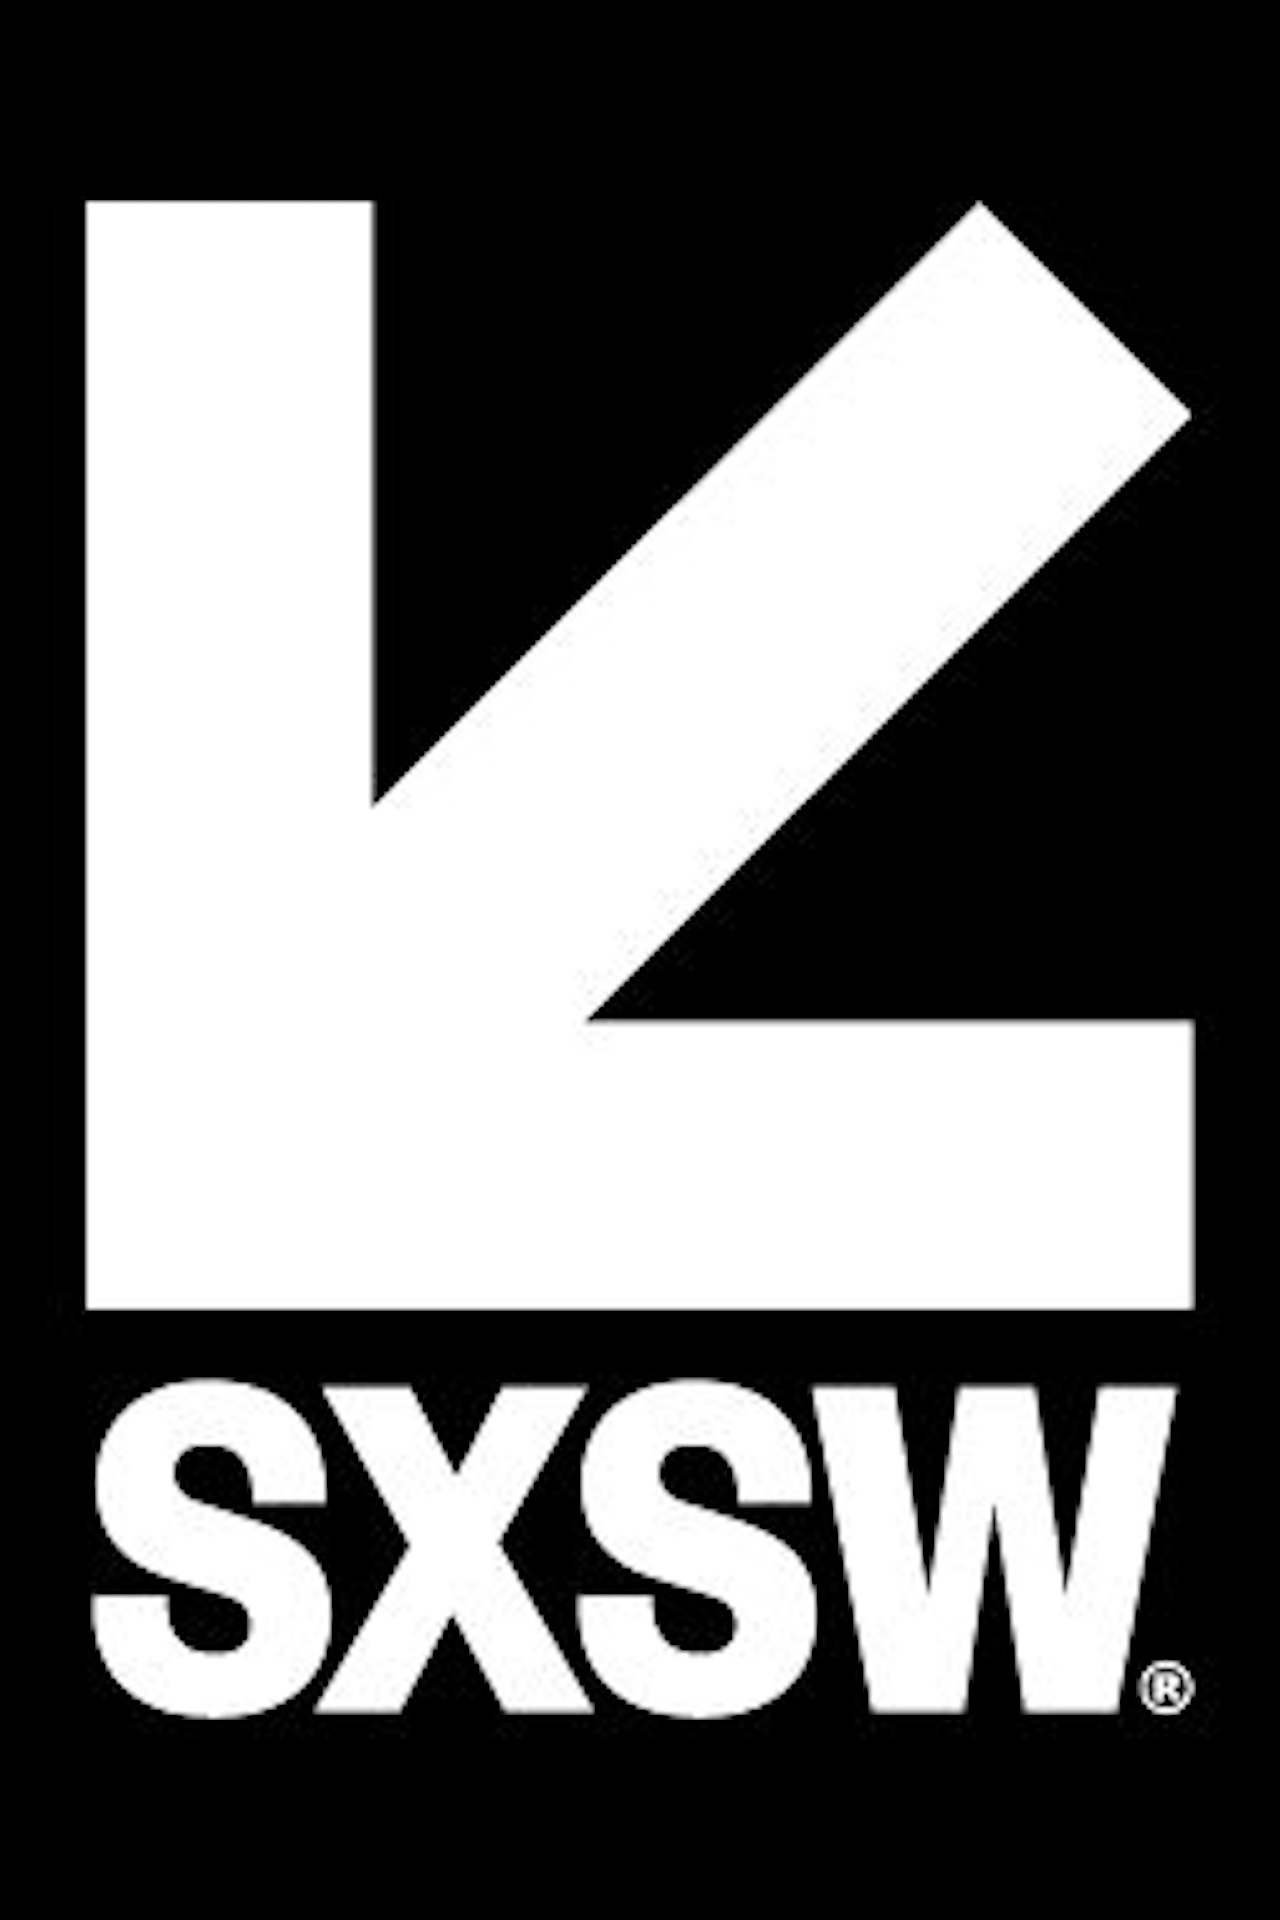 SXSW-Logo-Portrait-FI